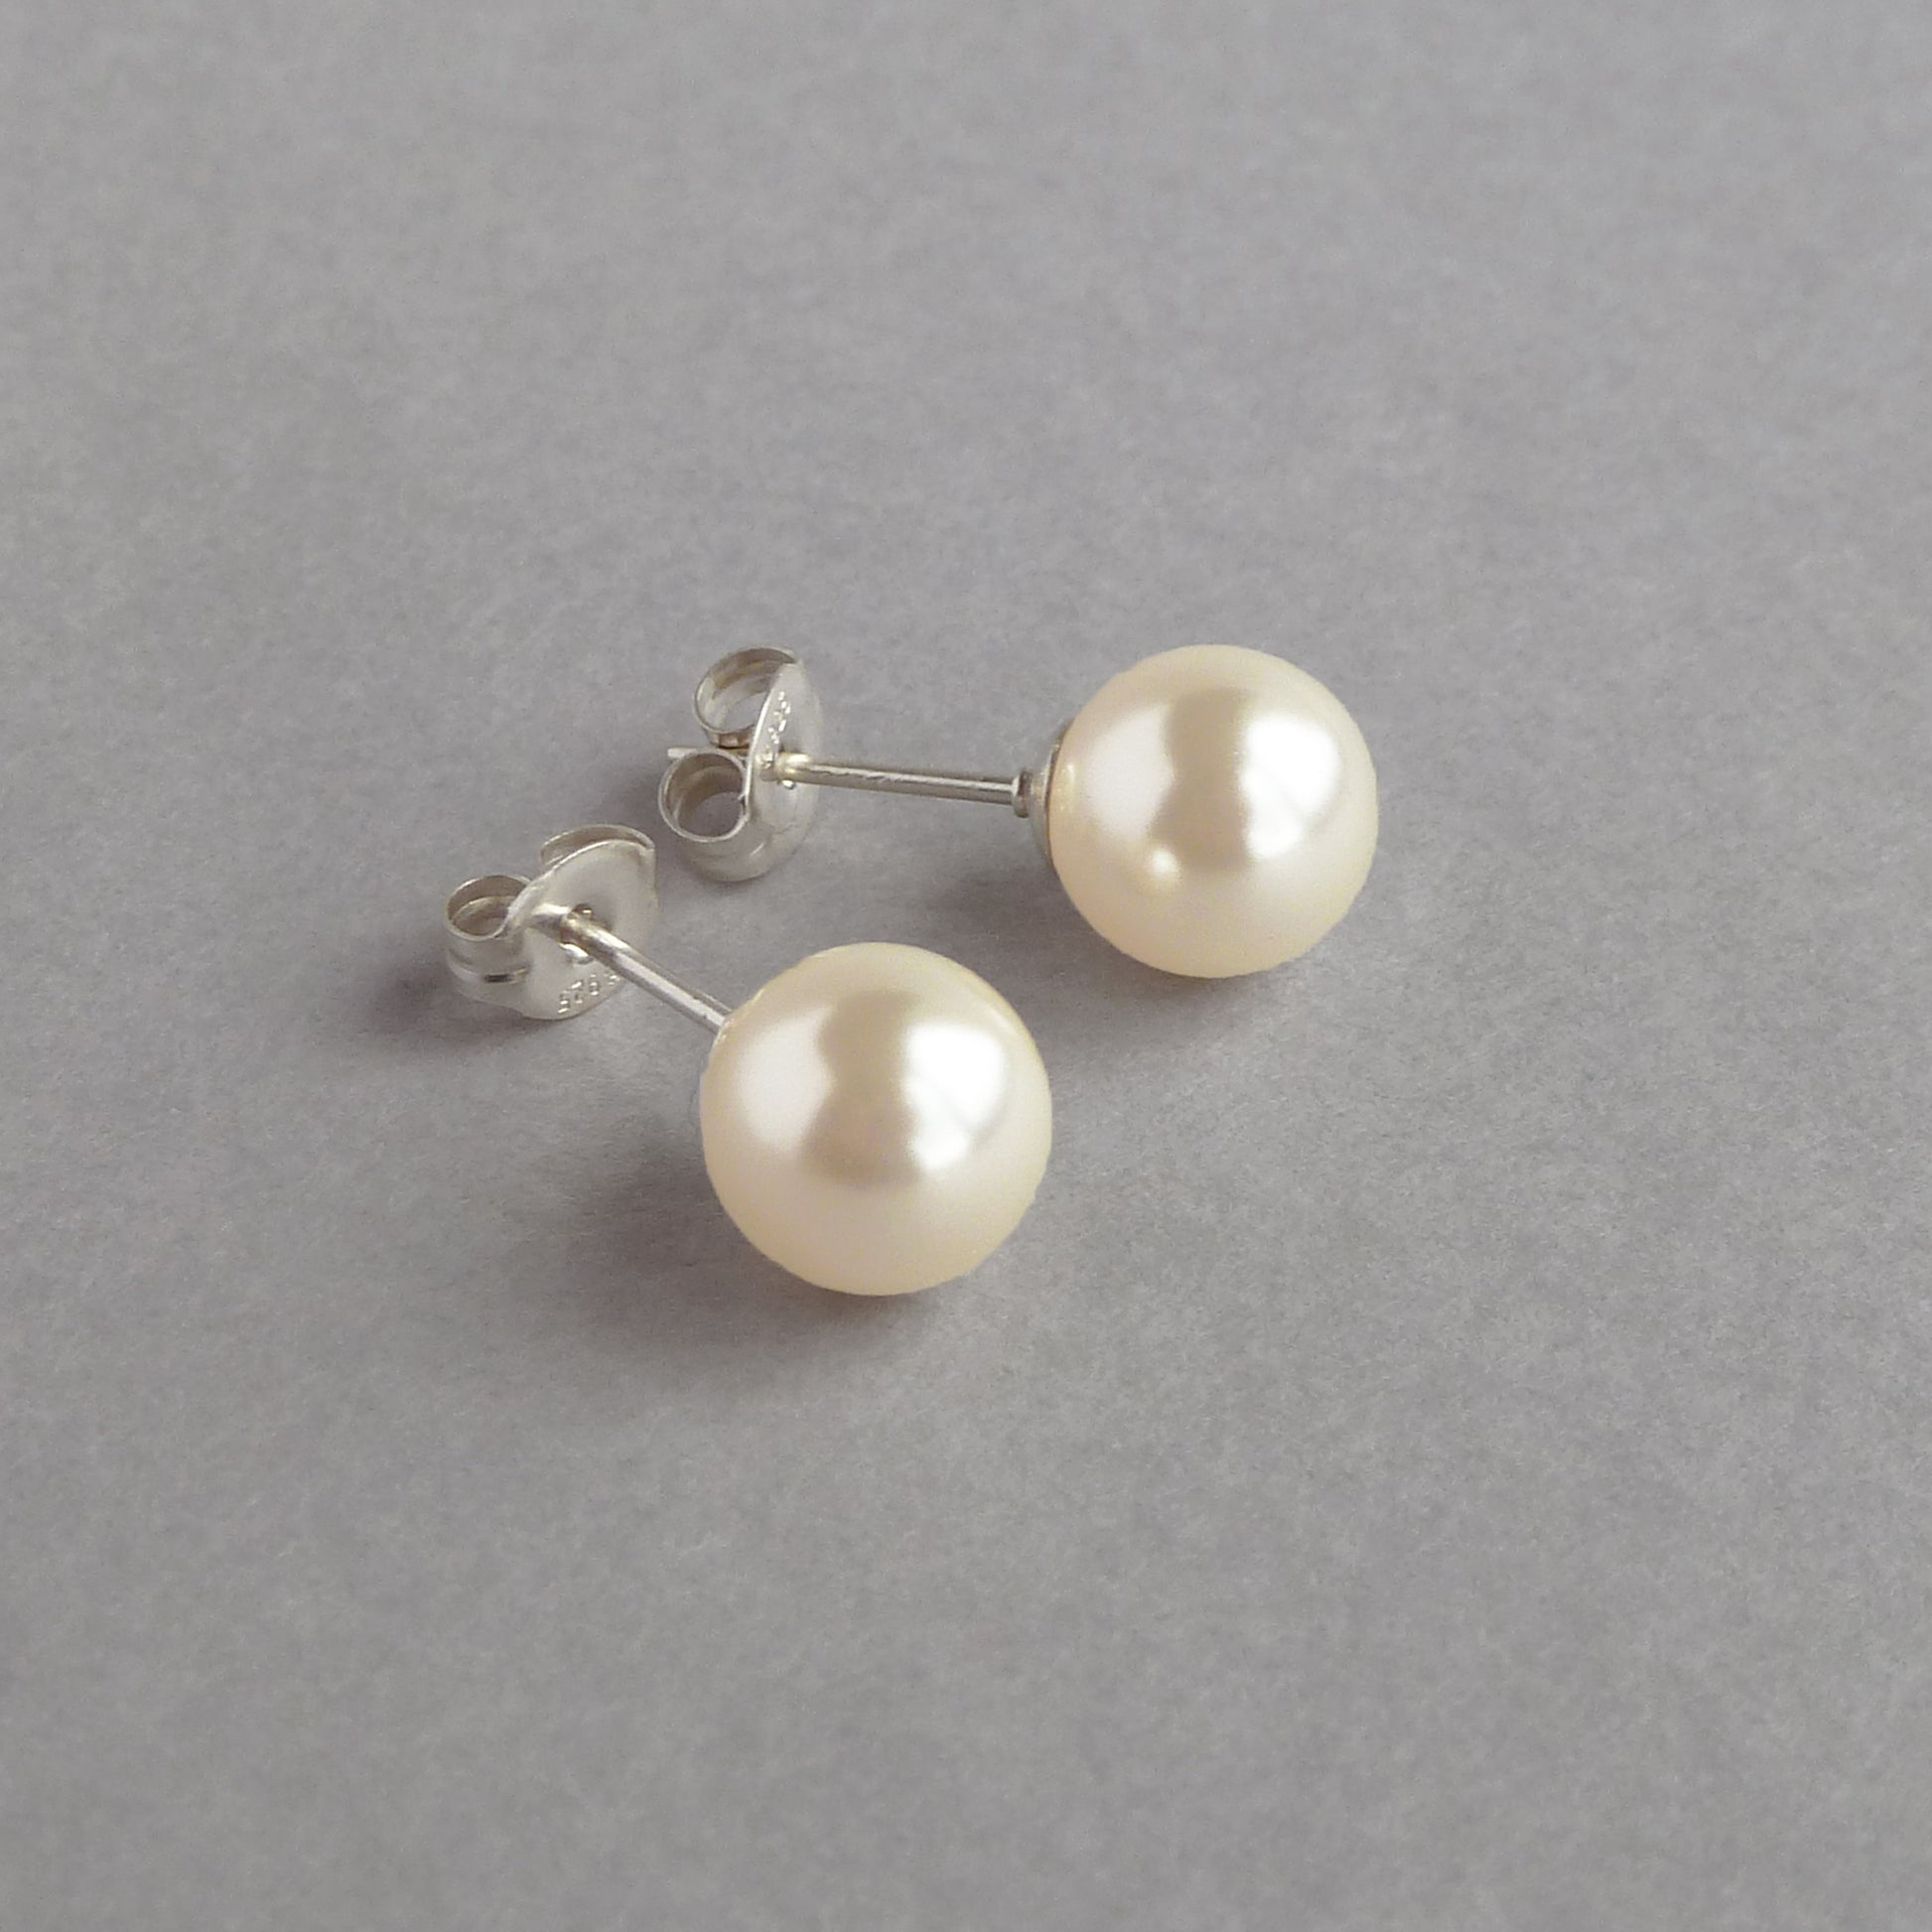 8mm ivory pearl stud earrings